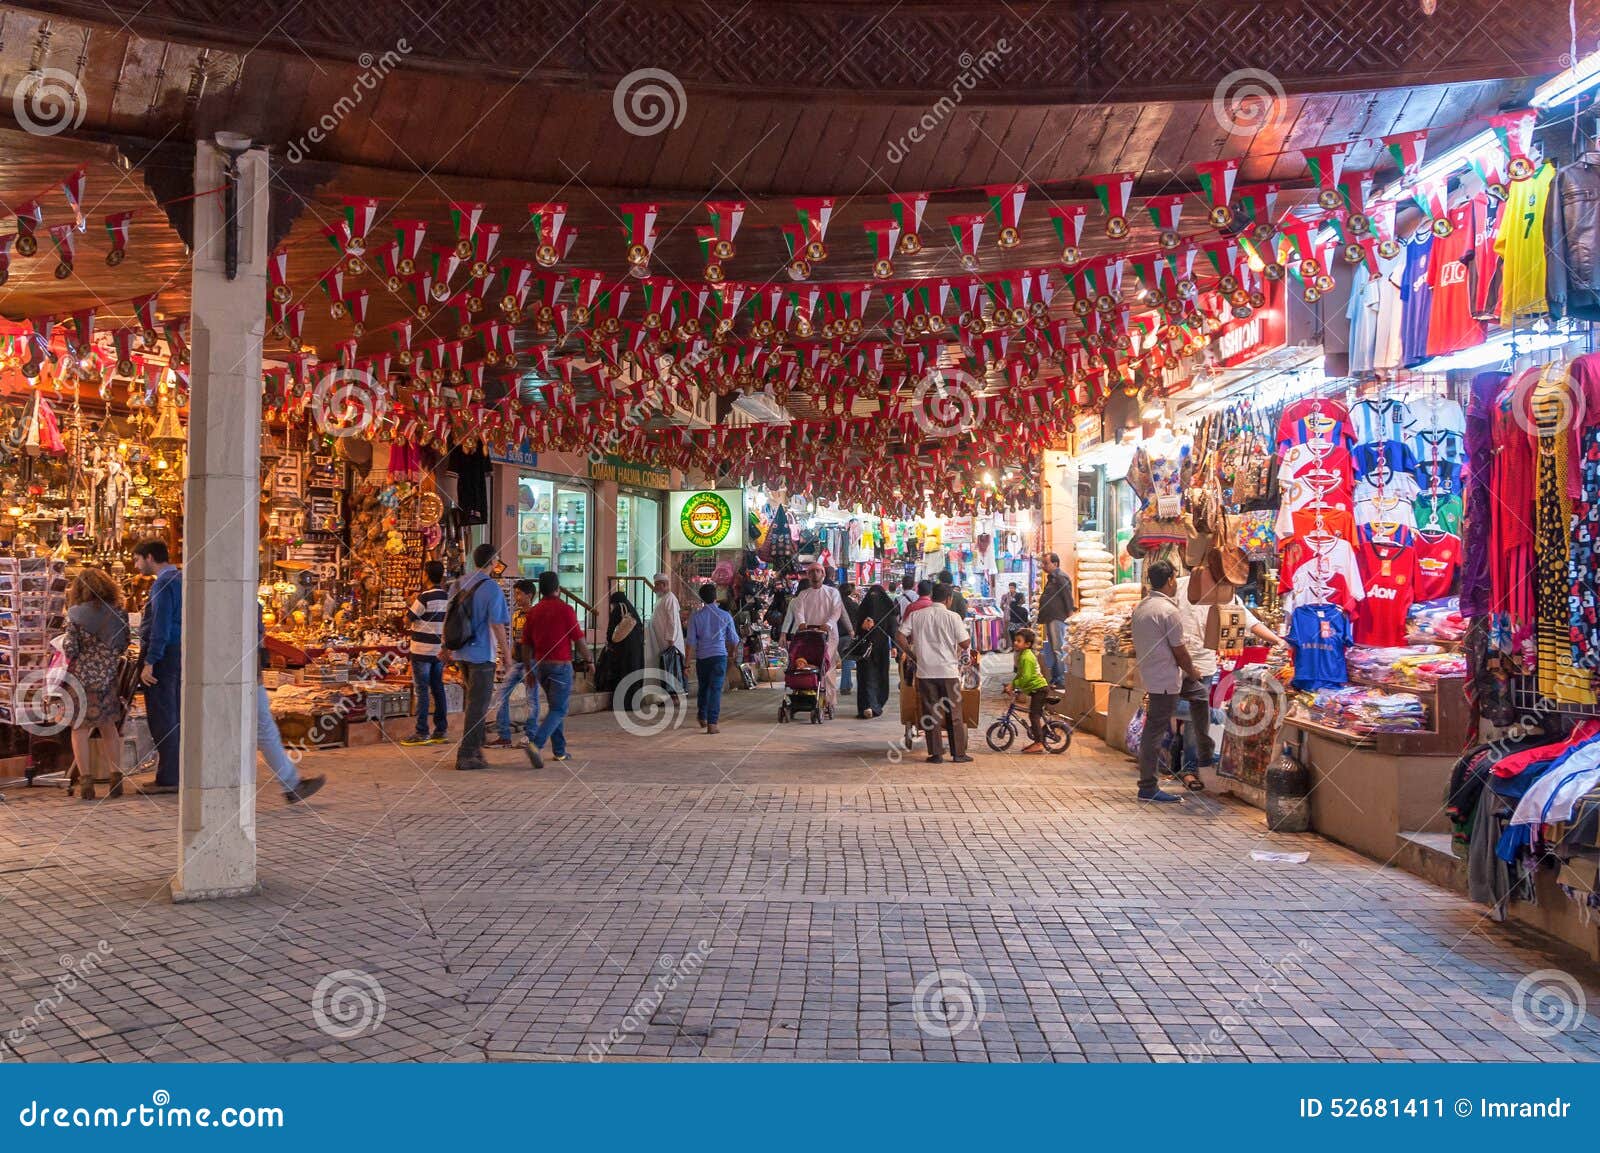 卖纪念品的商店，在Mutrah，马斯喀特，阿曼，中东. 卖纪念品的Mutrah Souk狭窄的街道，在Mutrah，马斯喀特，阿曼，中东